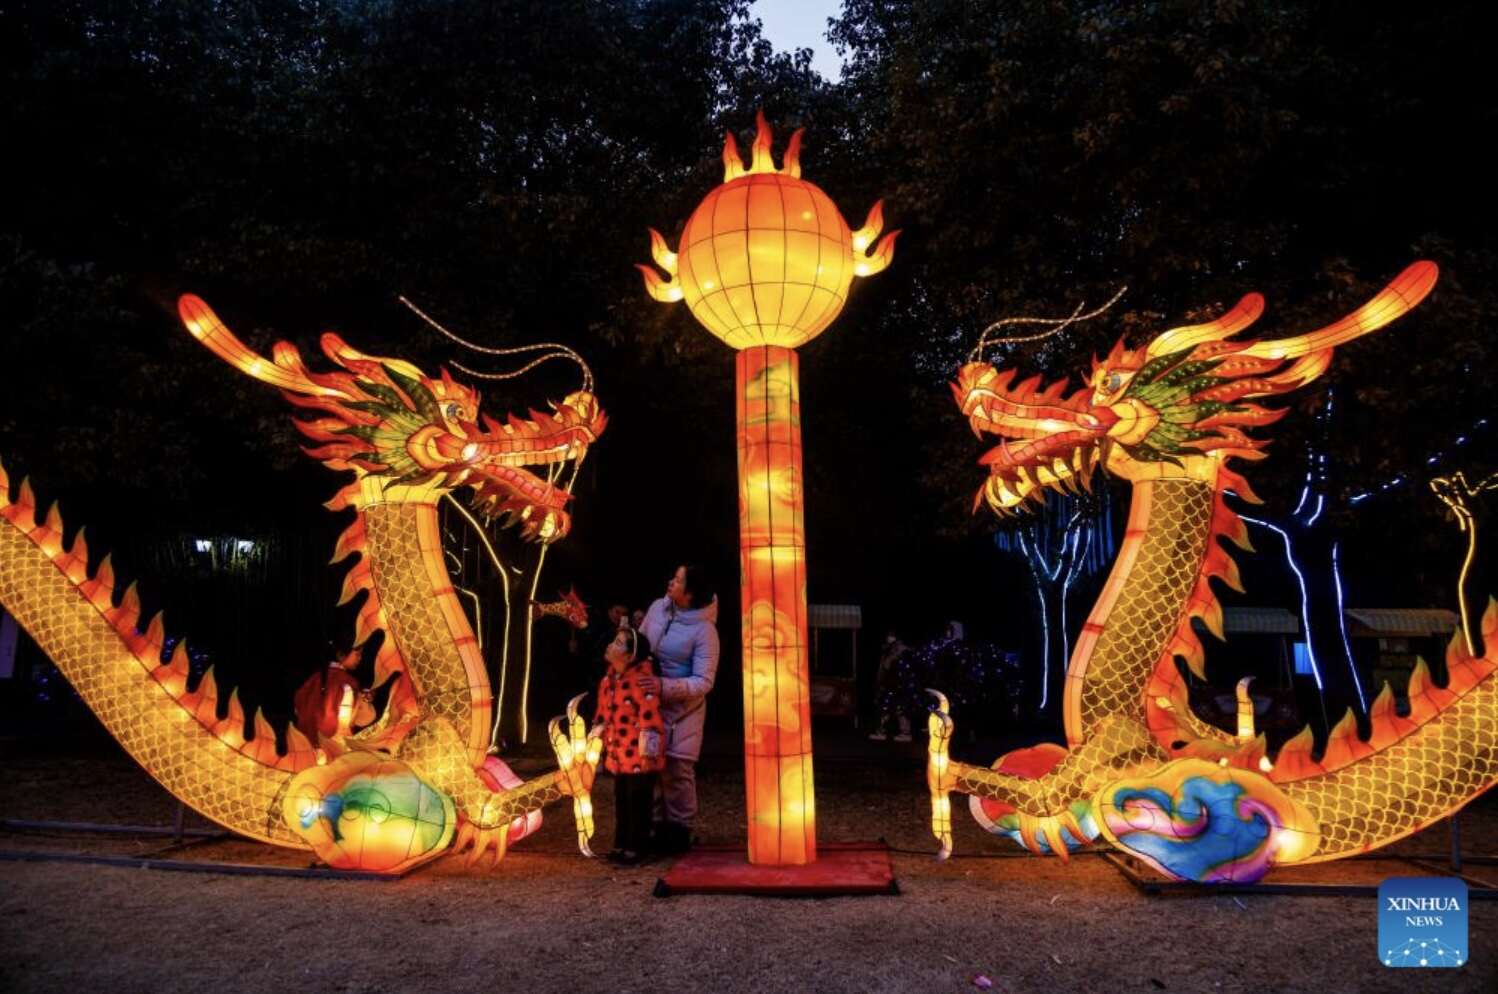 Du khách ngắm đèn lồng ở thành phố Thái Châu, tỉnh Giang Tô, phía đông Trung Quốc. Ảnh: Xinhua